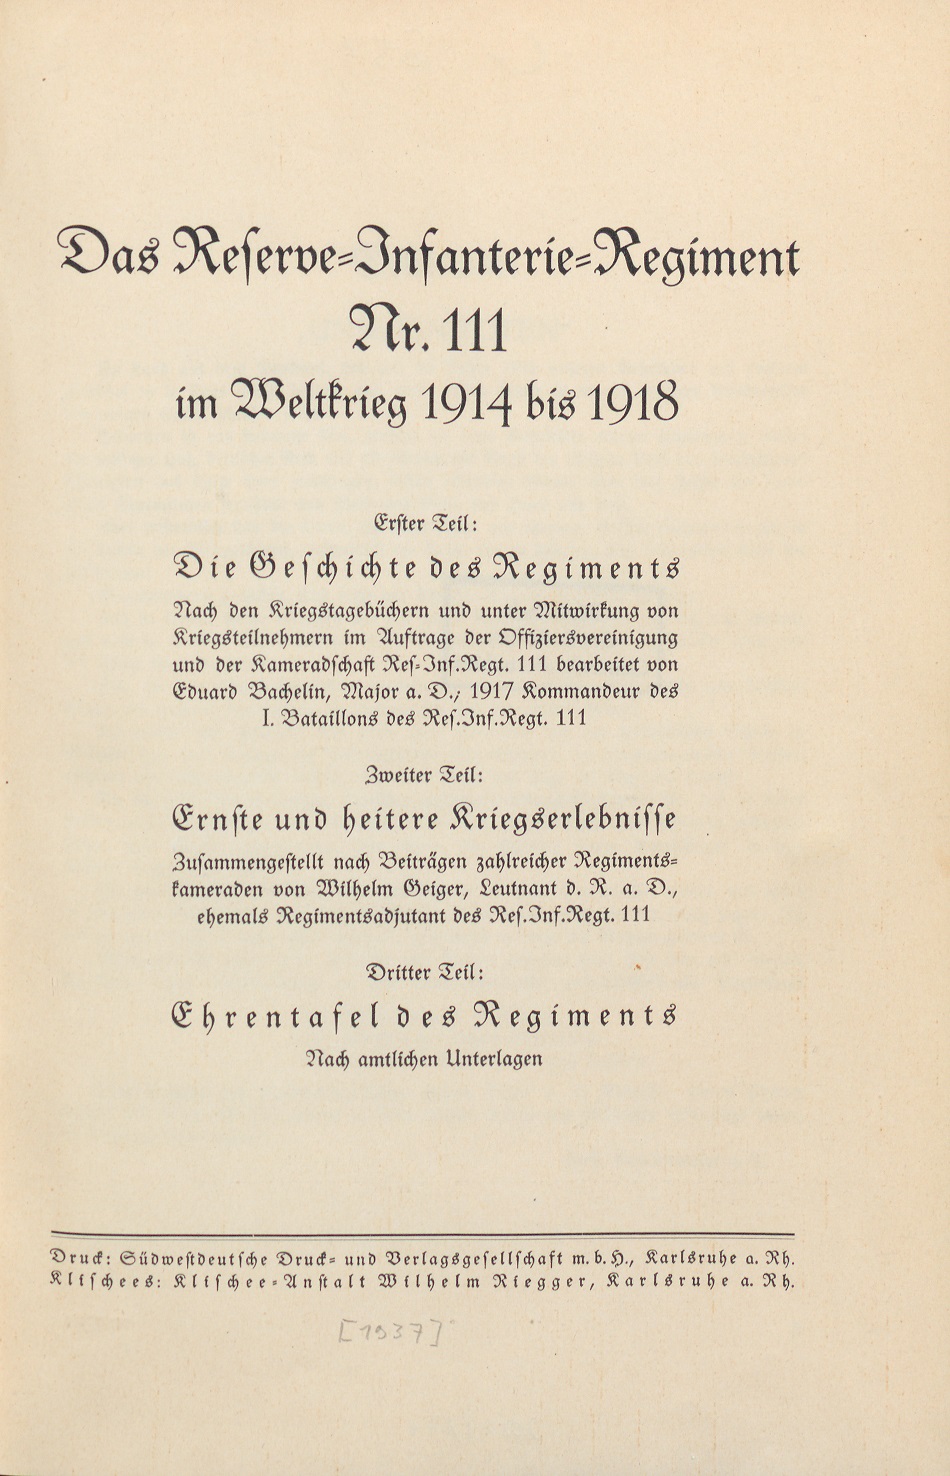  Das Reserve-Infanterie-Regiment Nr. 111 im Weltkrieg 1914 bis 1918, bearb. von Eduard Bachelin und Wilhelm Geiger, Karlsruhe [1937] (Quelle: Landesarchiv BW, GLAK Cr 651) 